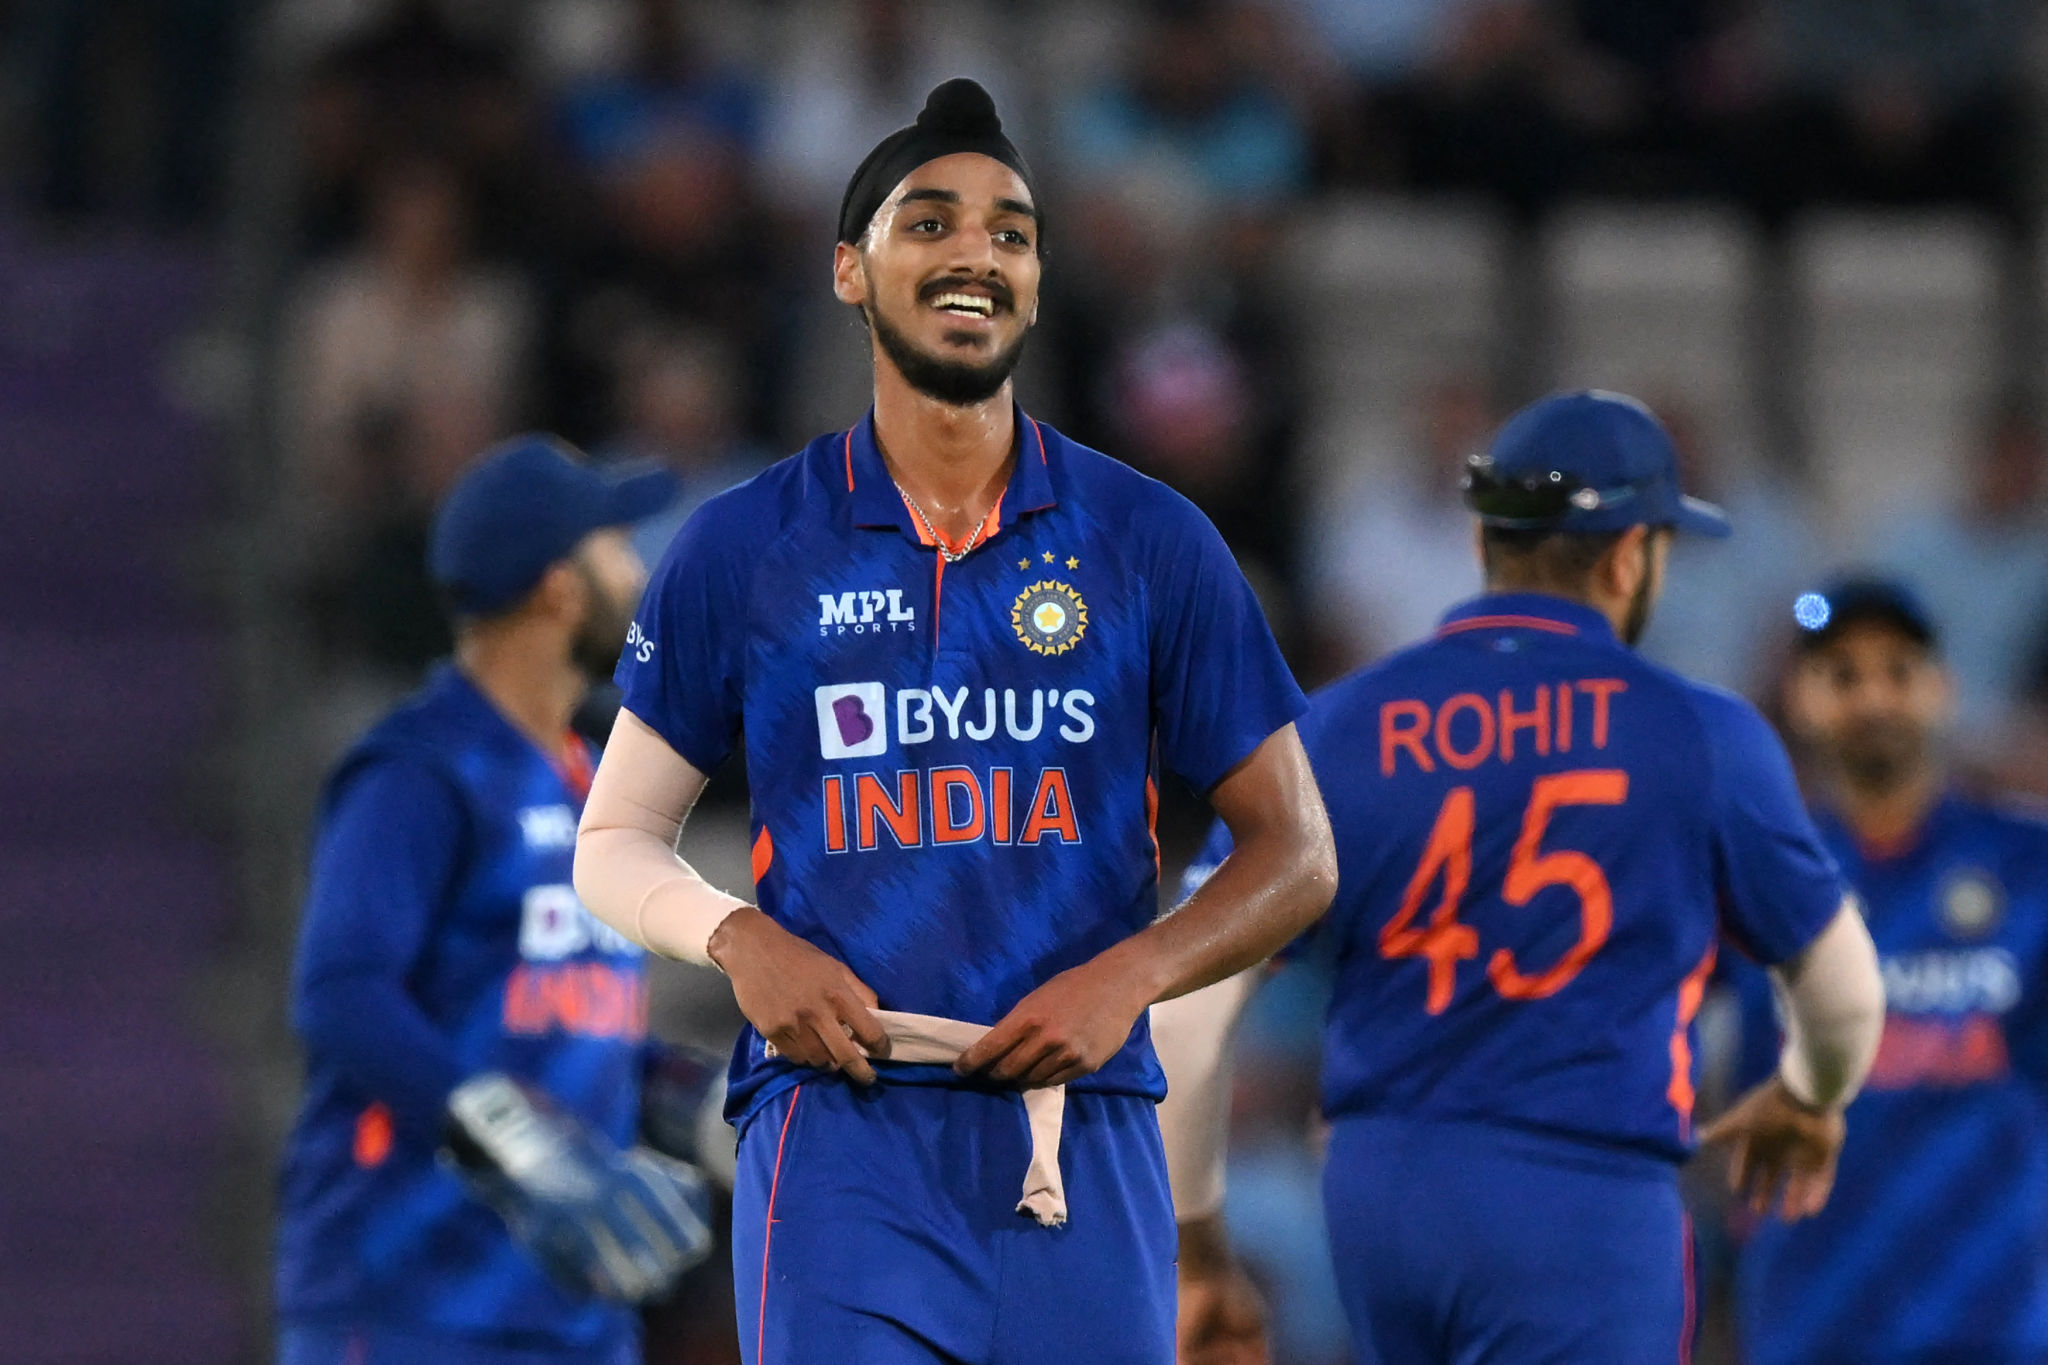 Hindistan XI ile WI Karşısında Oynanıyor: Arshdeep Singh muhtemelen ODI'ye ilk çıkışını yapacak, kombinasyonlarda Rahul Dravid için BÜYÜK baş ağrısı: IND vs WI 1st ODI LIVE, Hindistan vs WestIndies LIVE